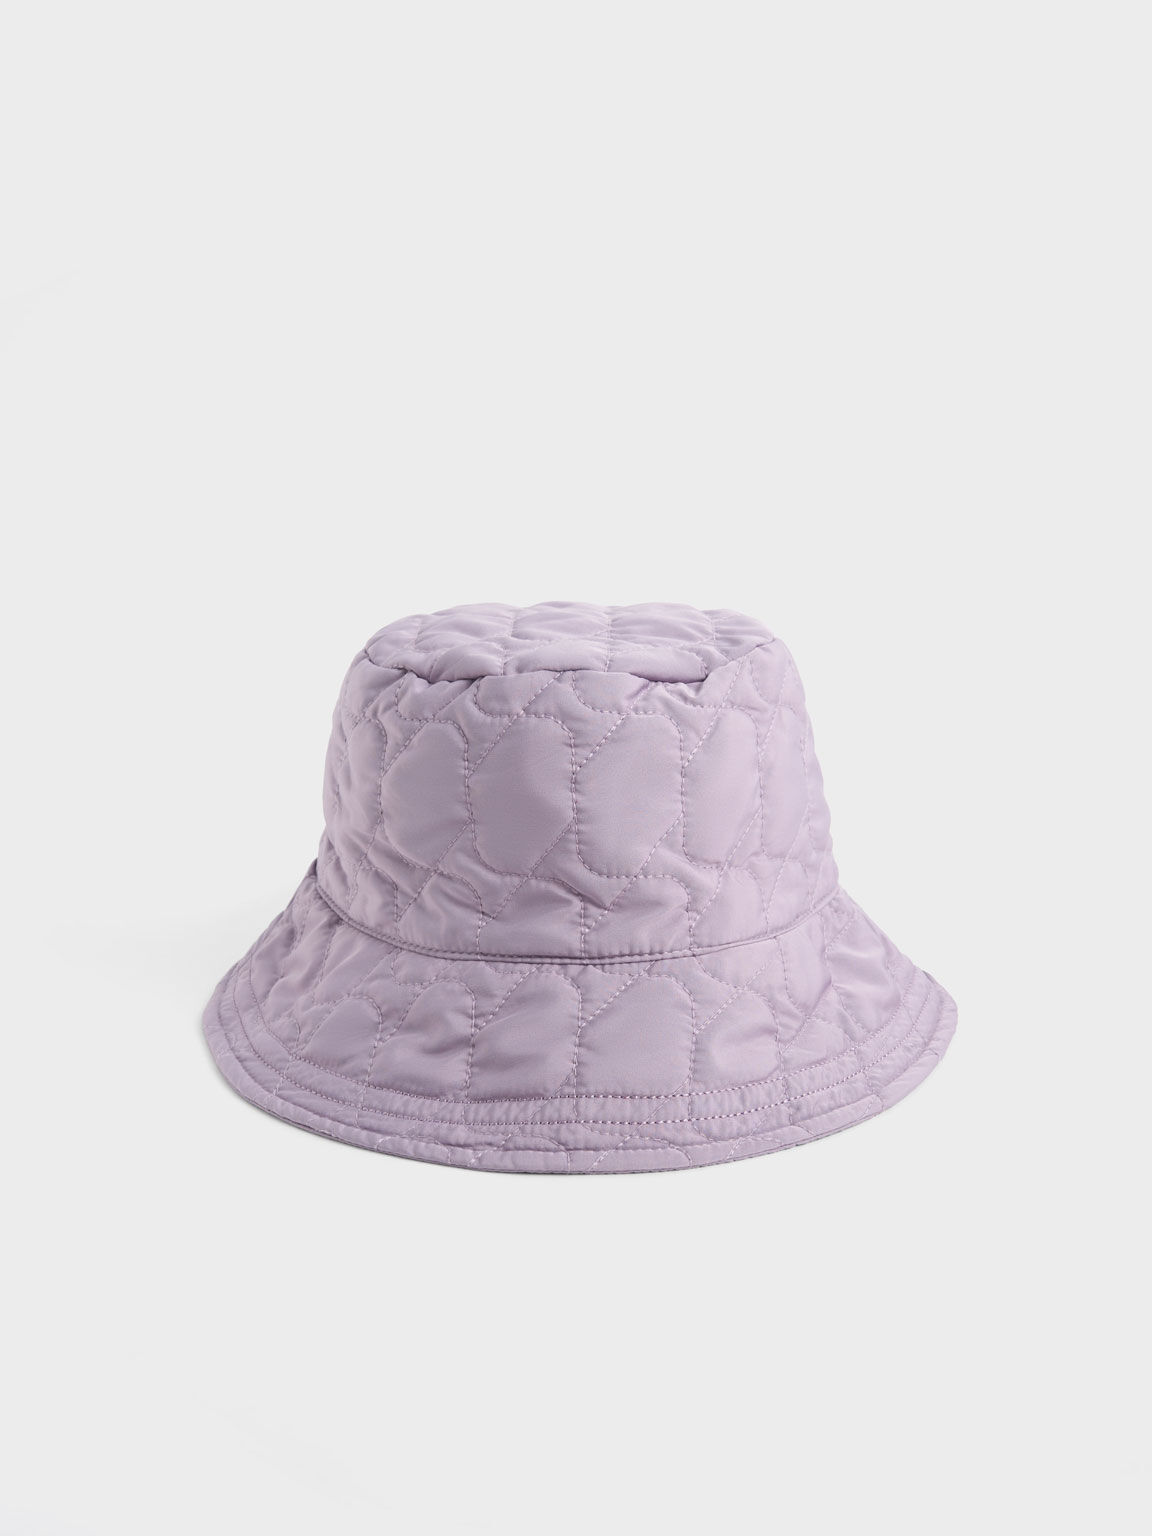 澎澎衍縫漁夫帽, 紫丁香色, hi-res